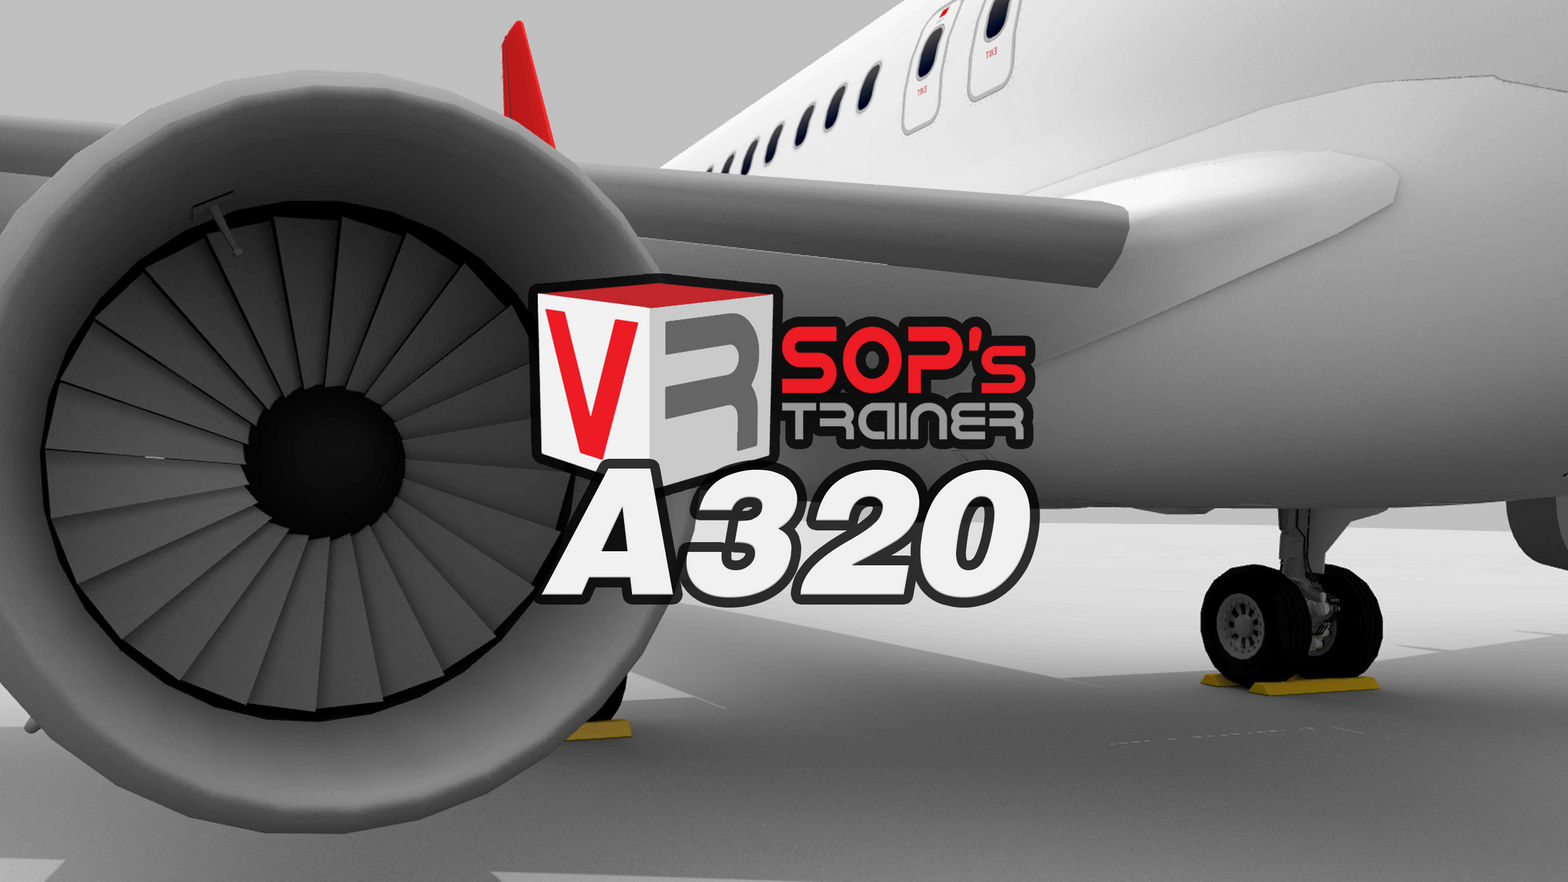 VRSOPS a320